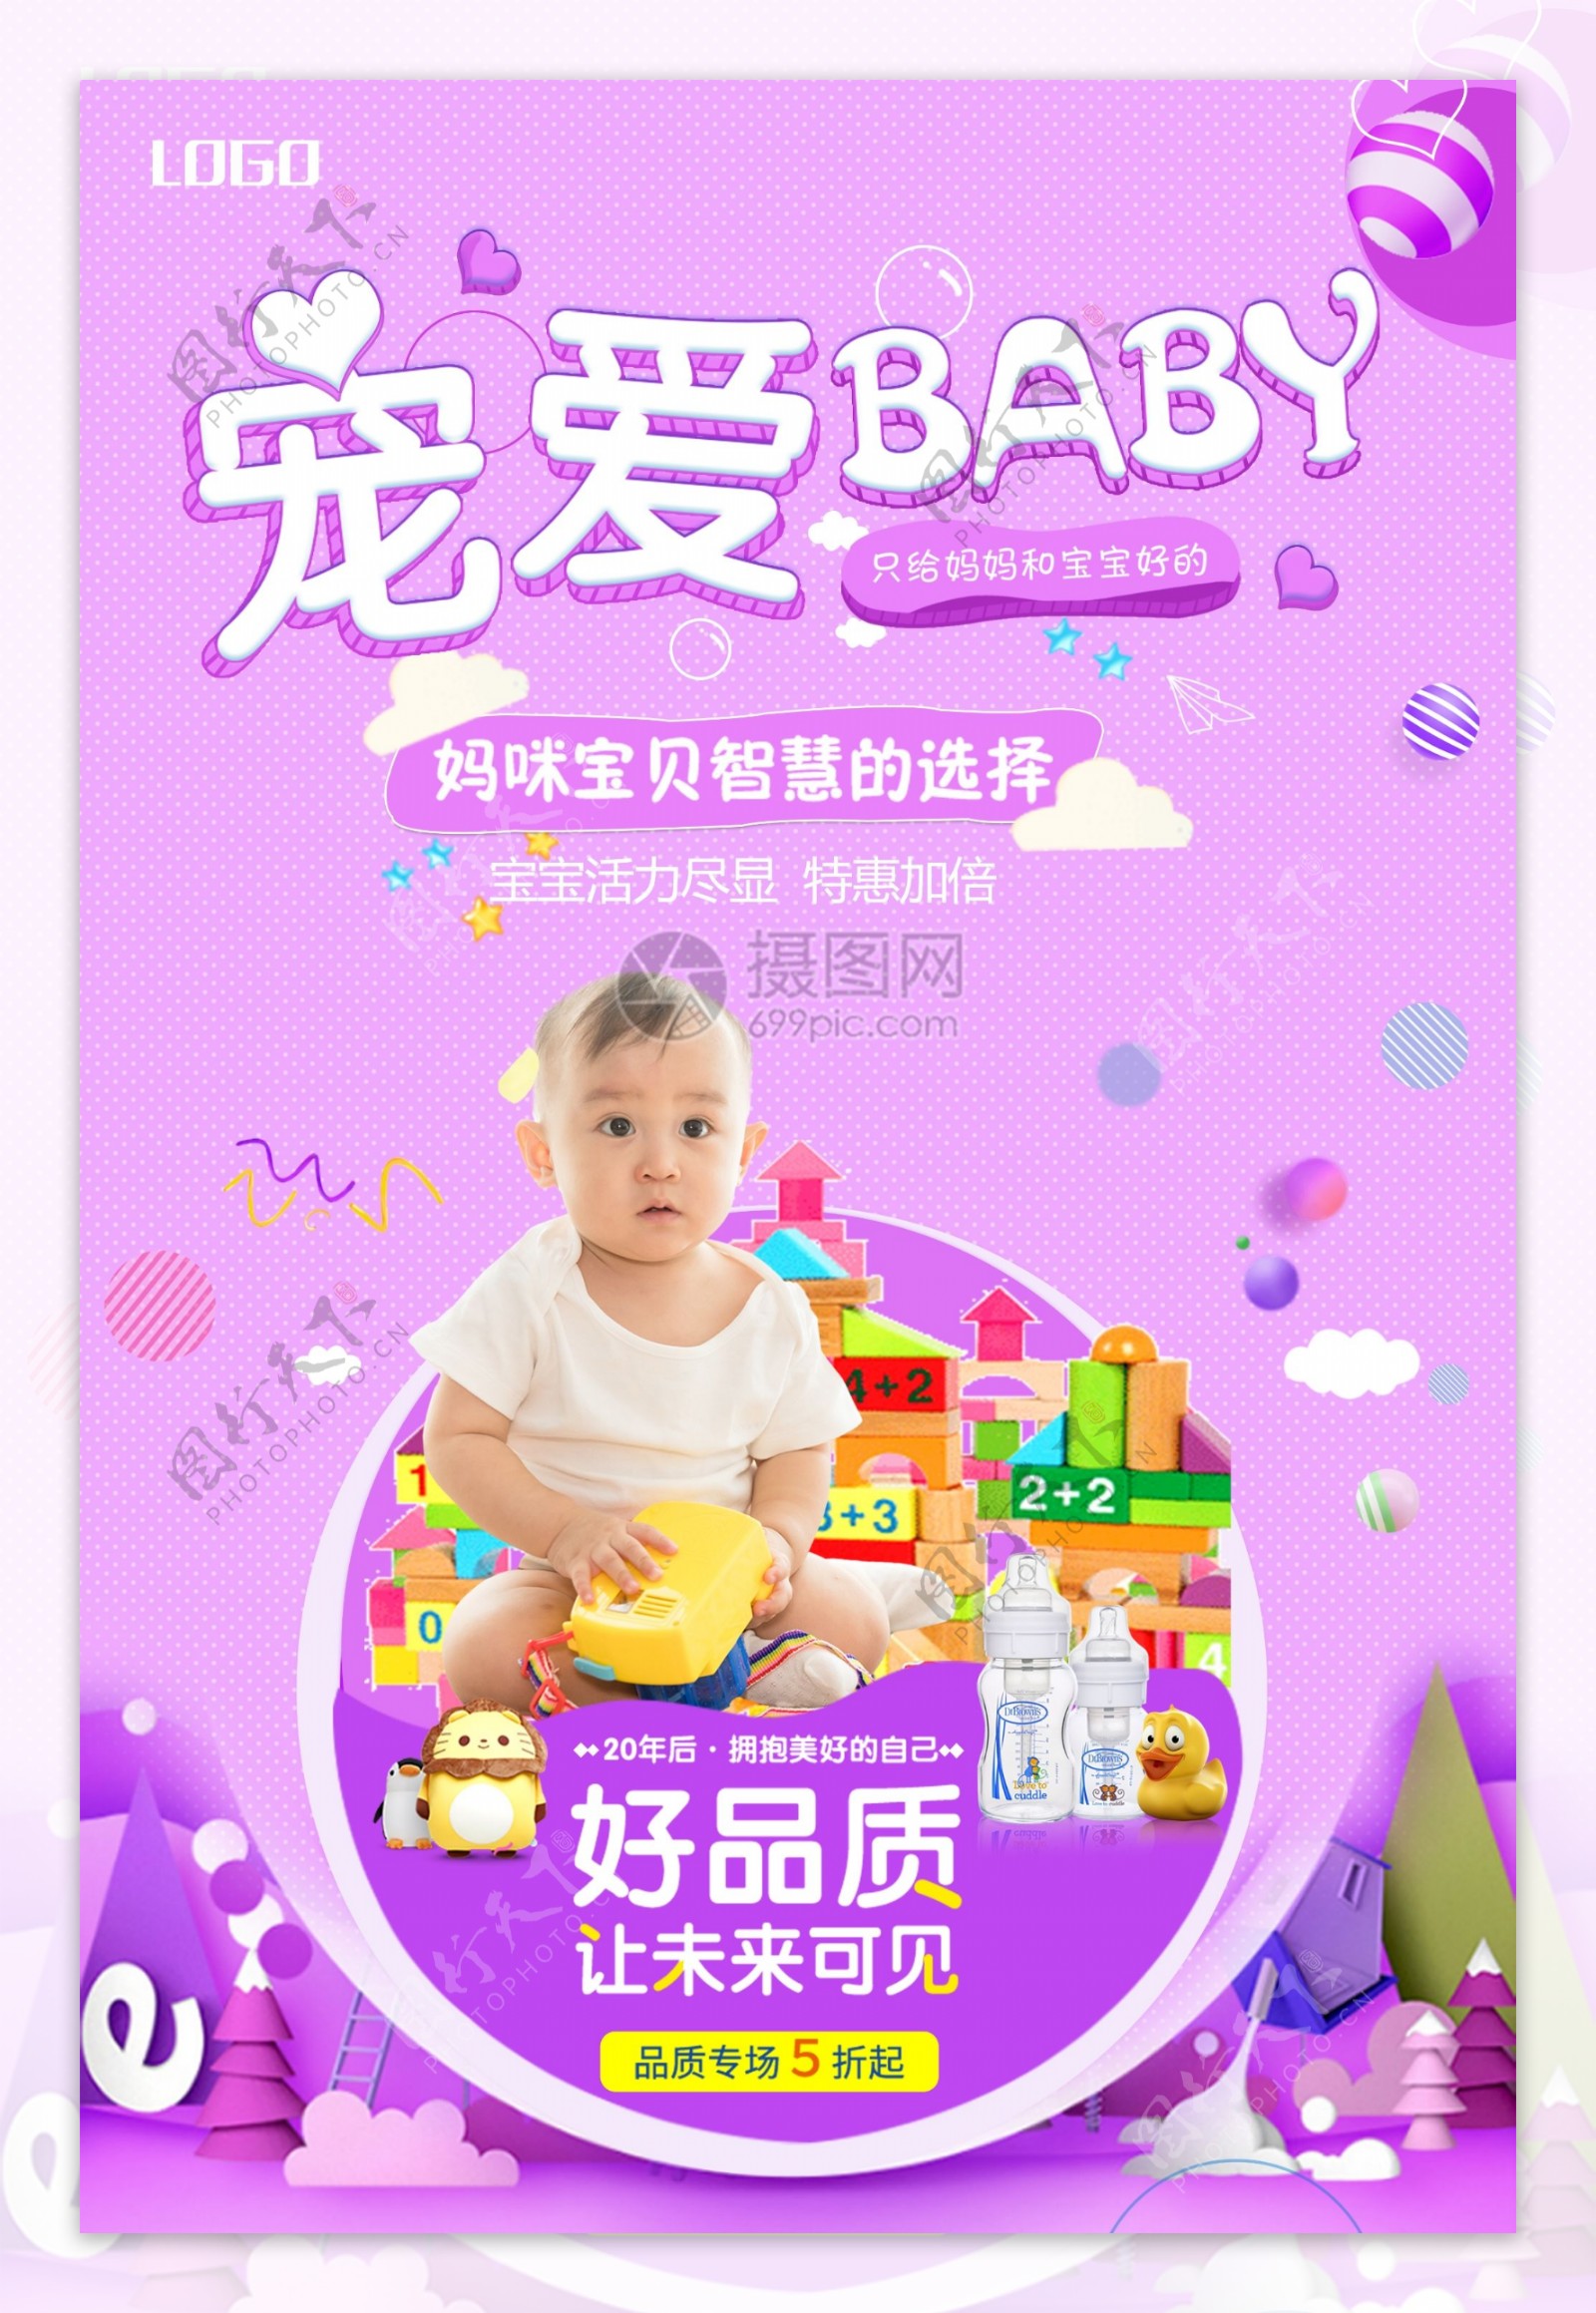 宠爱baby母婴用品促销海报